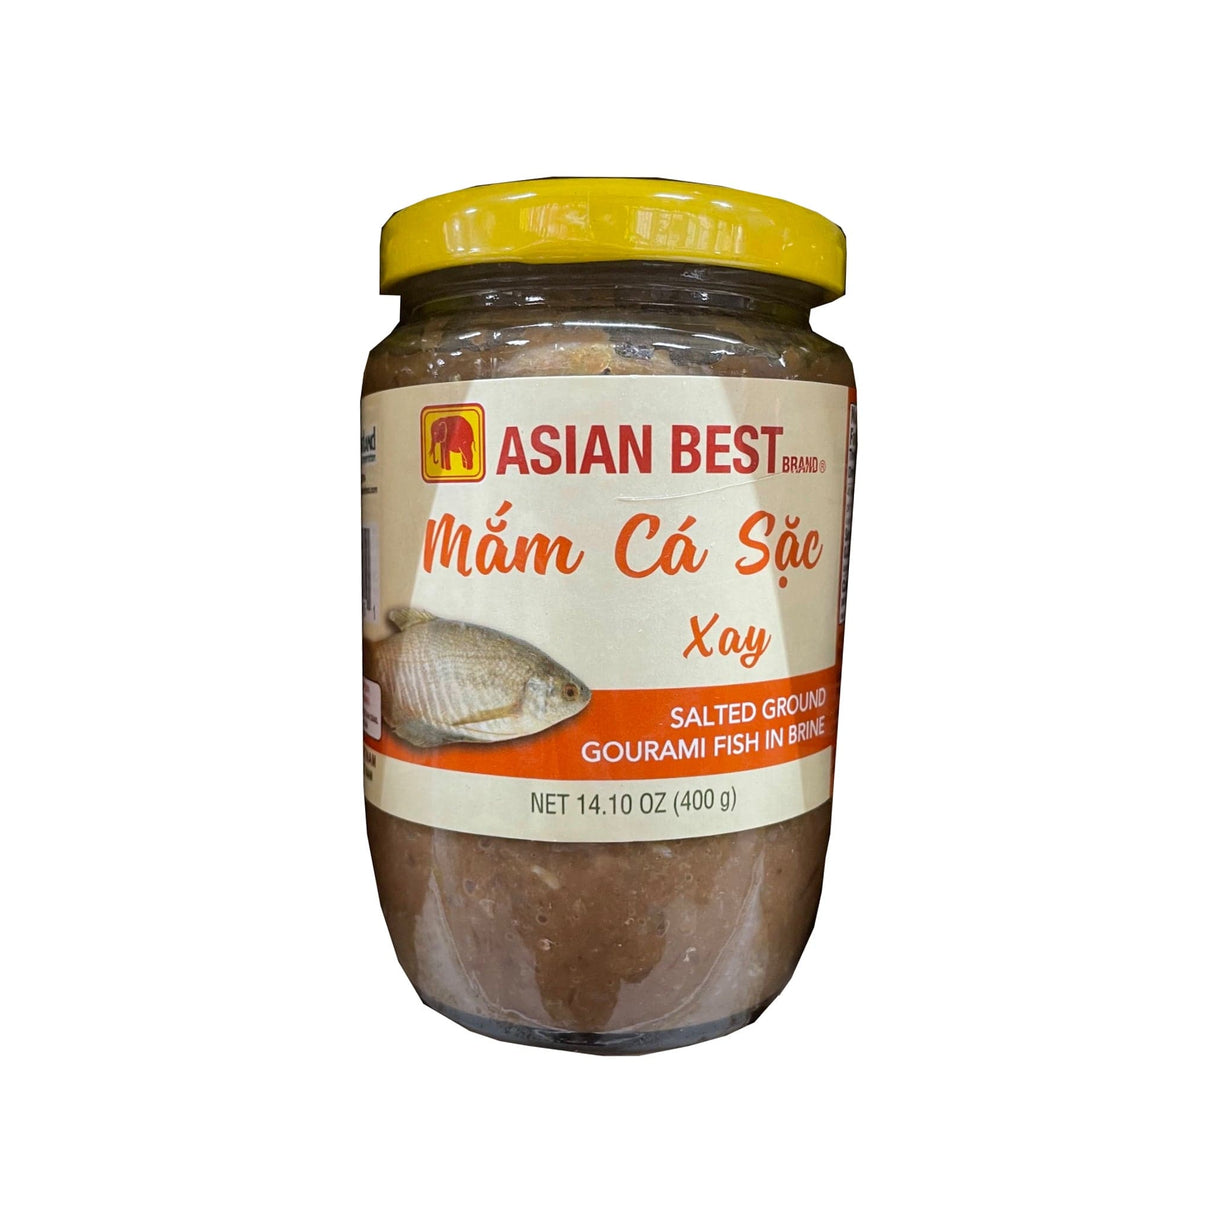 Asian Best Brand Salted Ground Gourami Fish in Brine (Mam Ca Sac Xay)